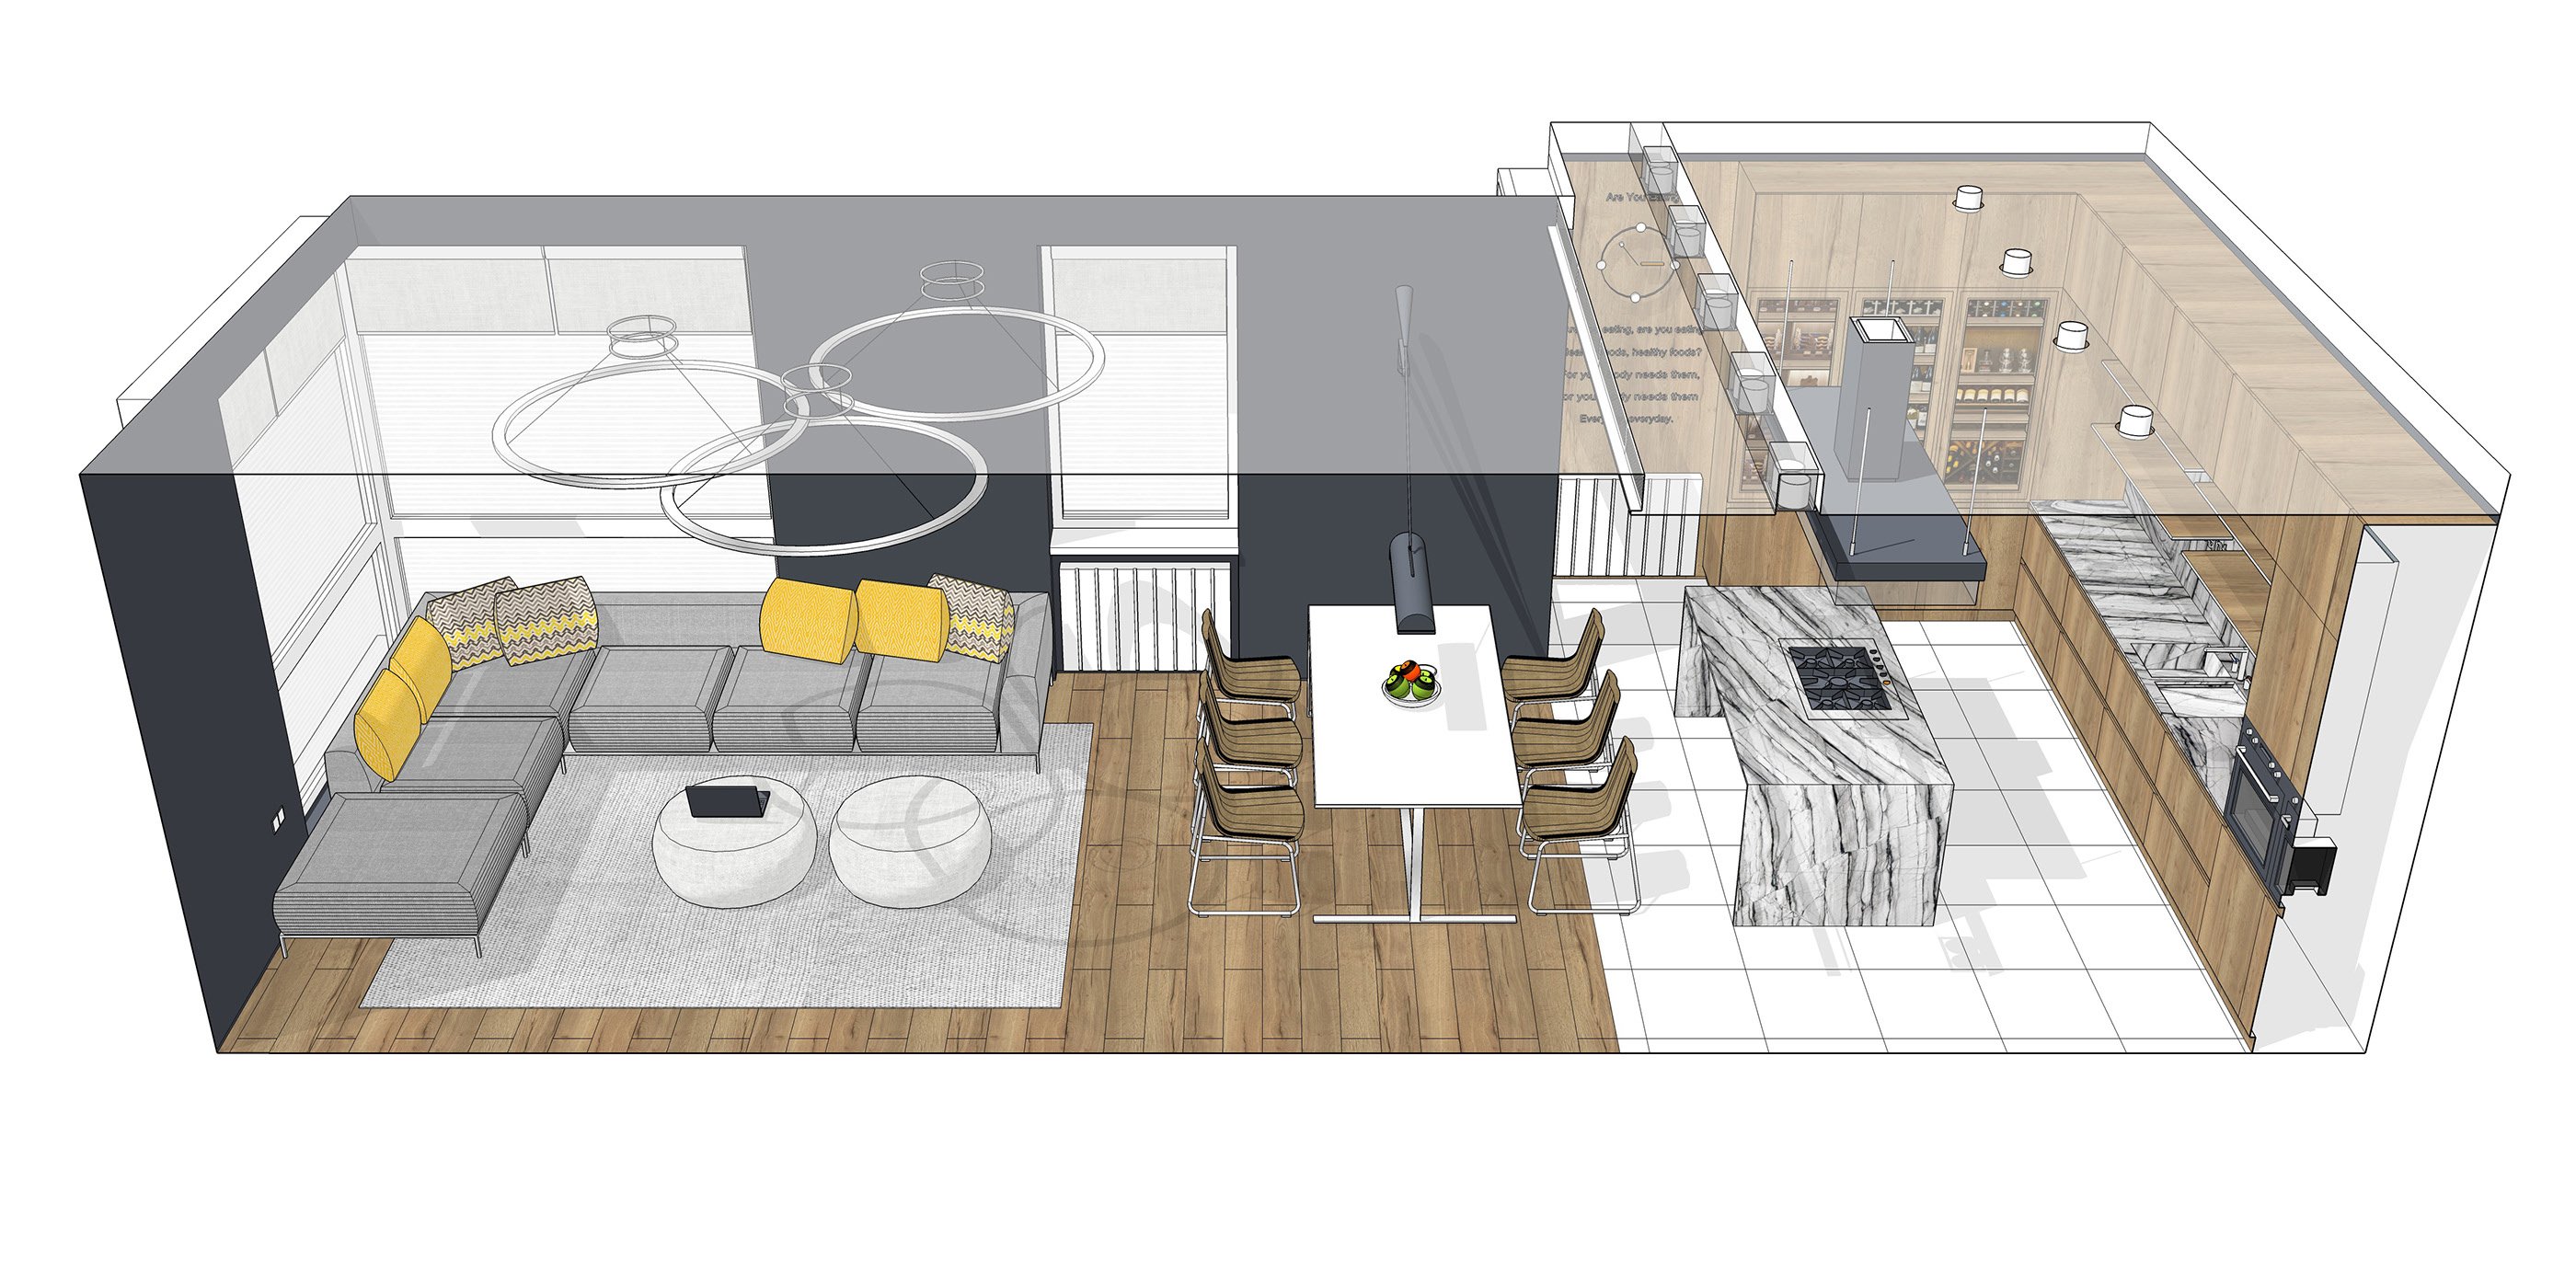 проект дизайн квартиры sketchup